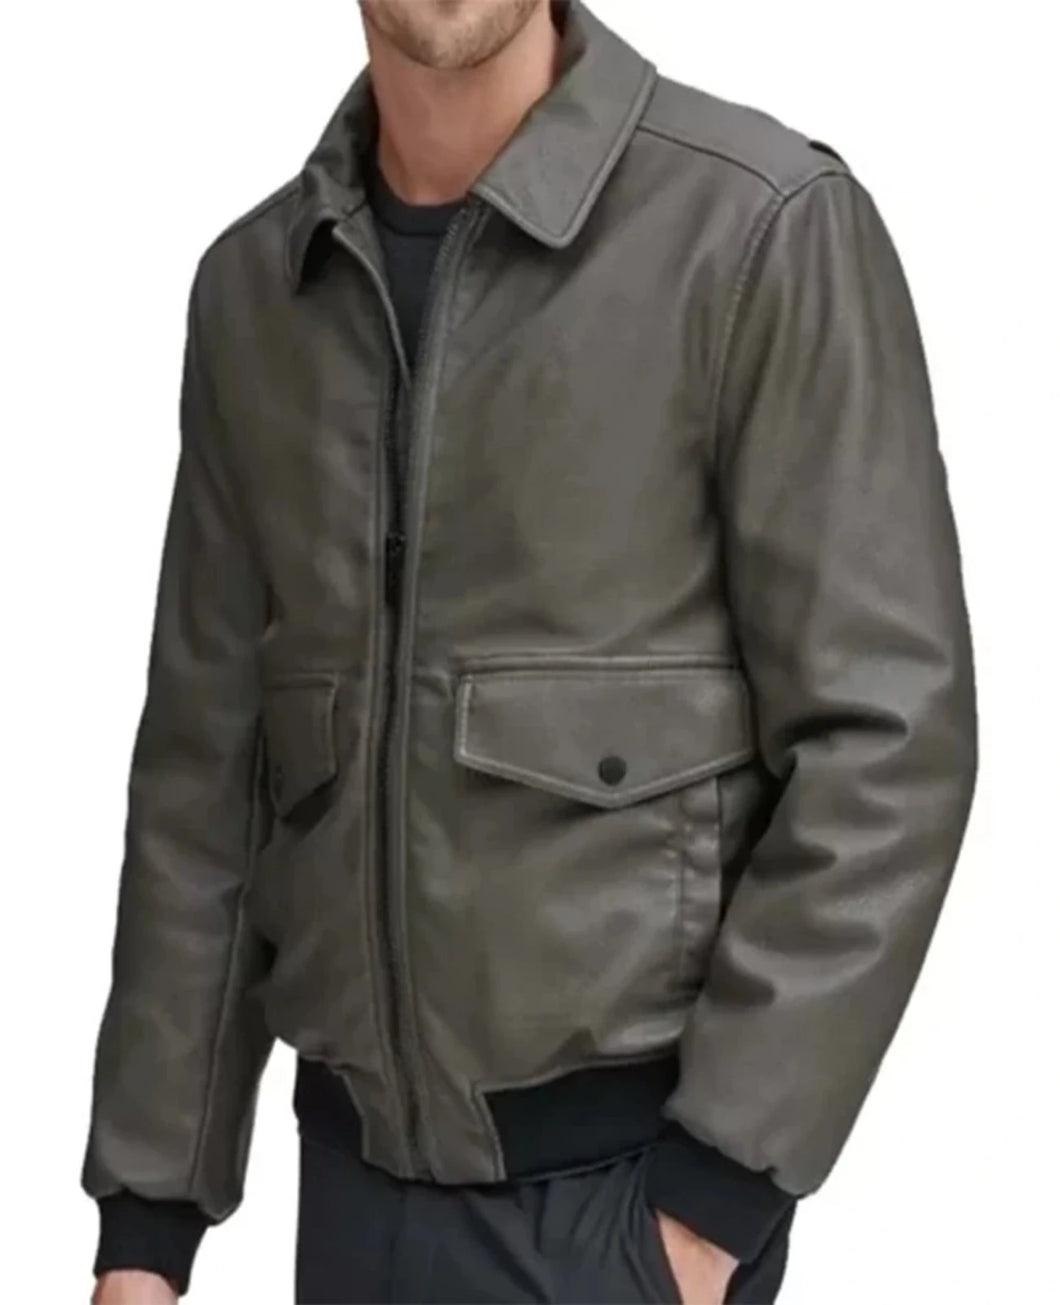 Mens Grey Shirt Style Leather Bomber Jacket